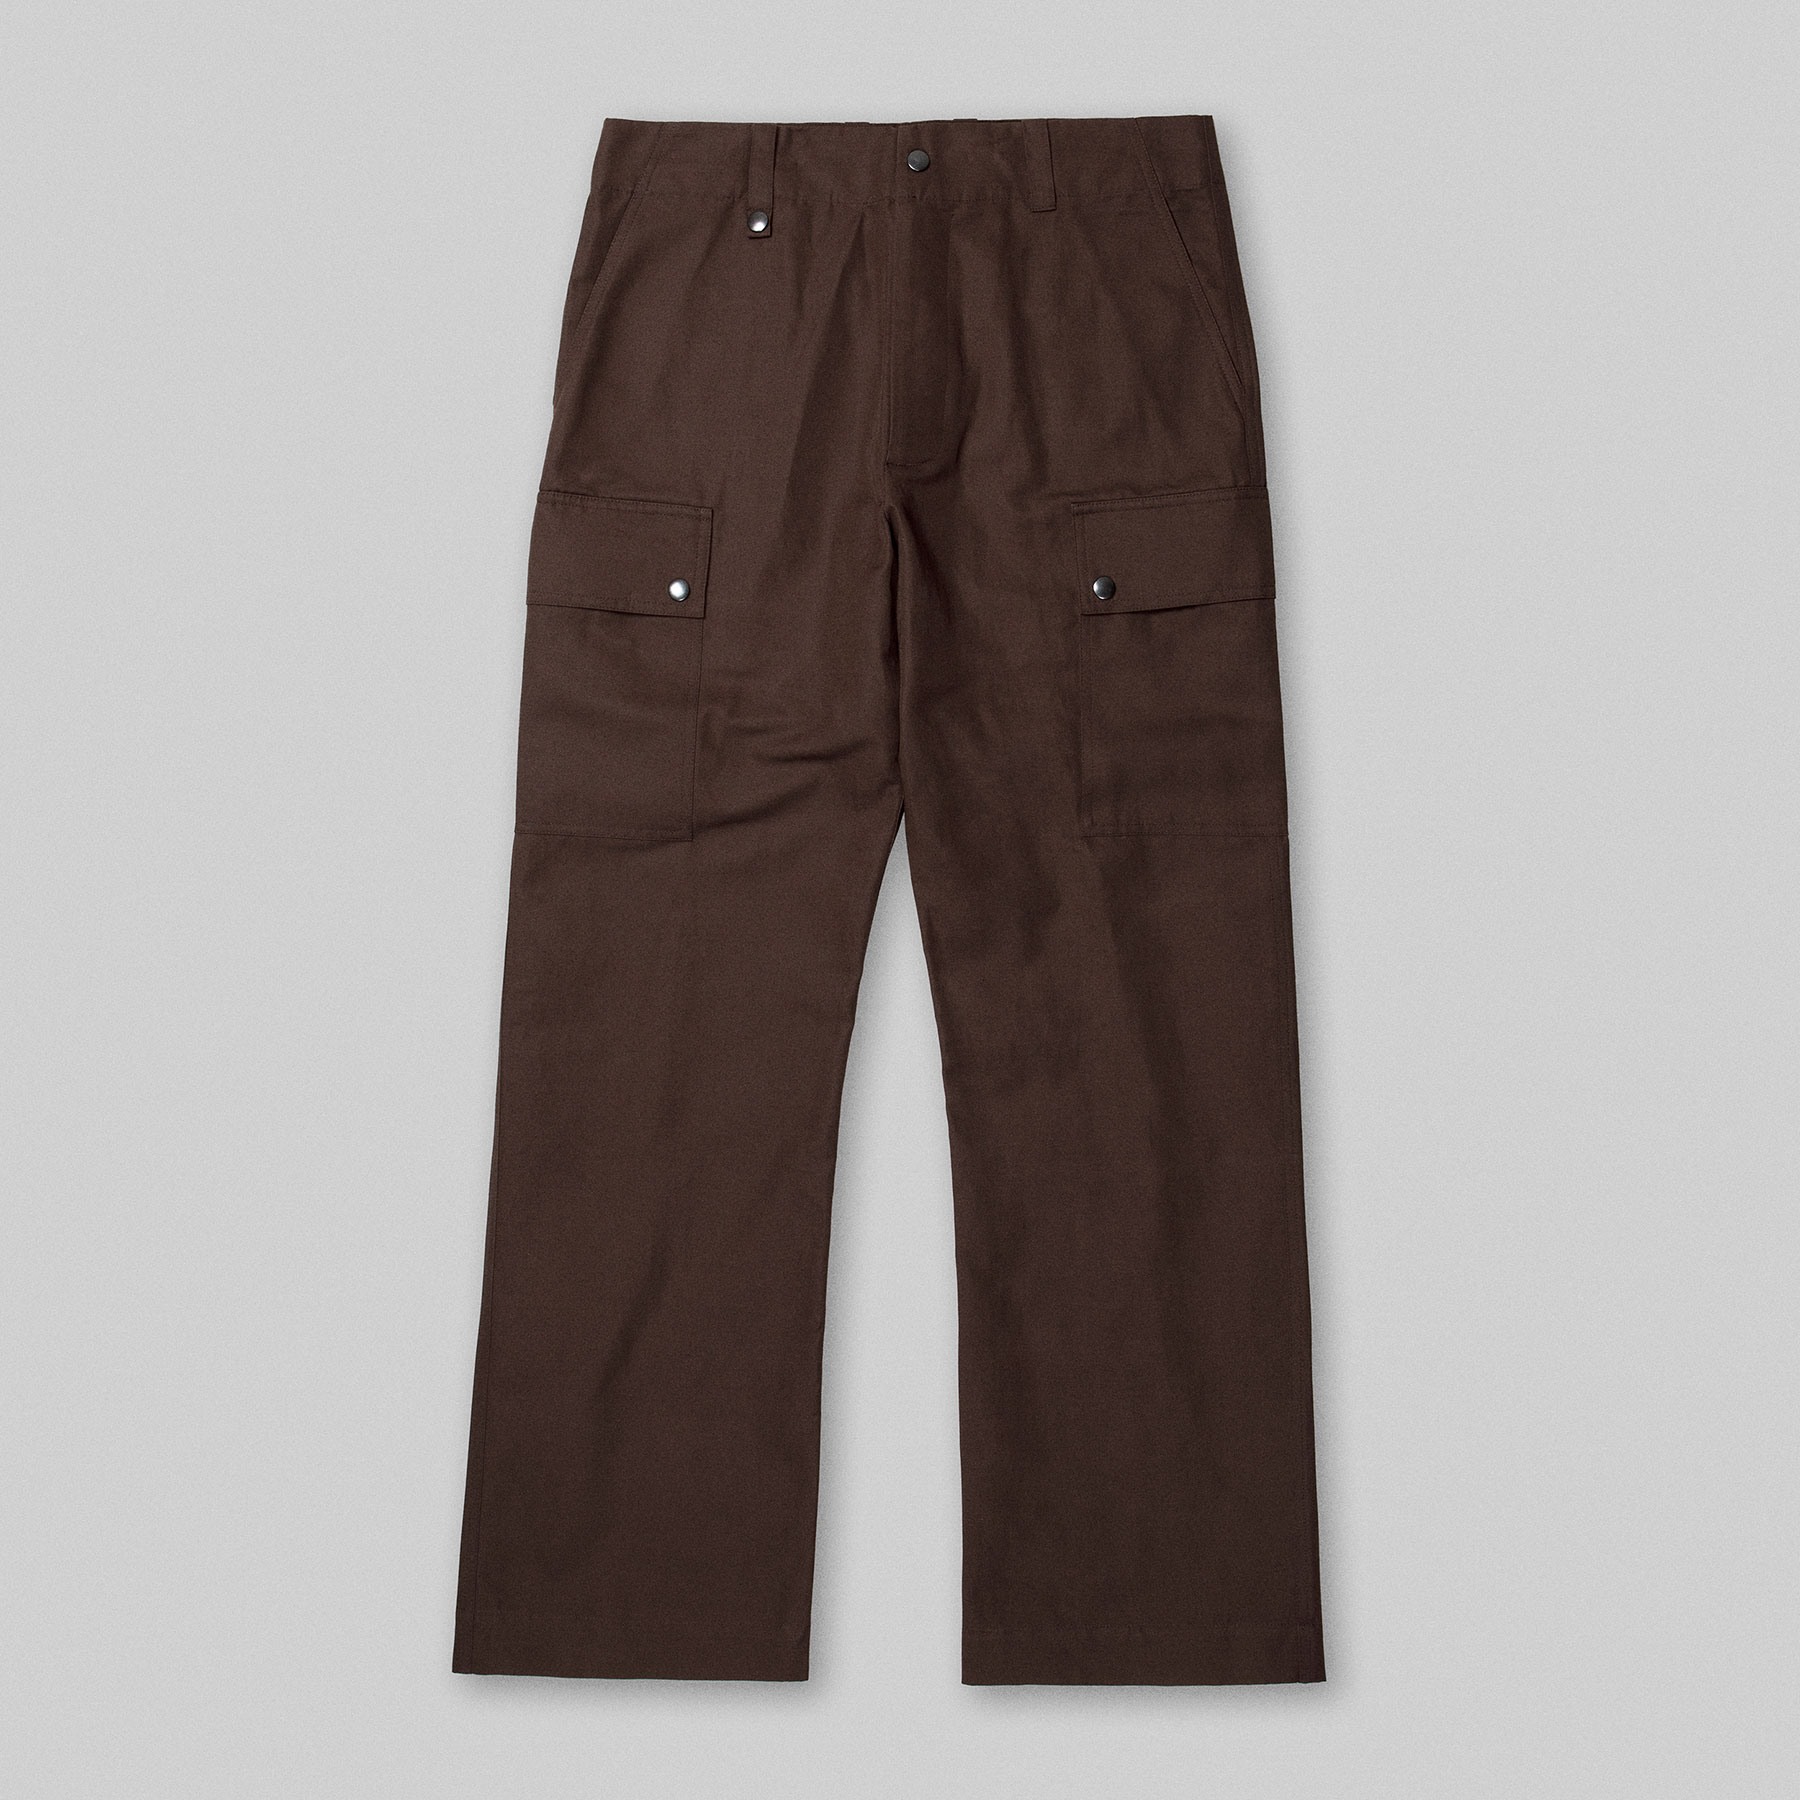 DECK Pants by Arpenteur in Brown color